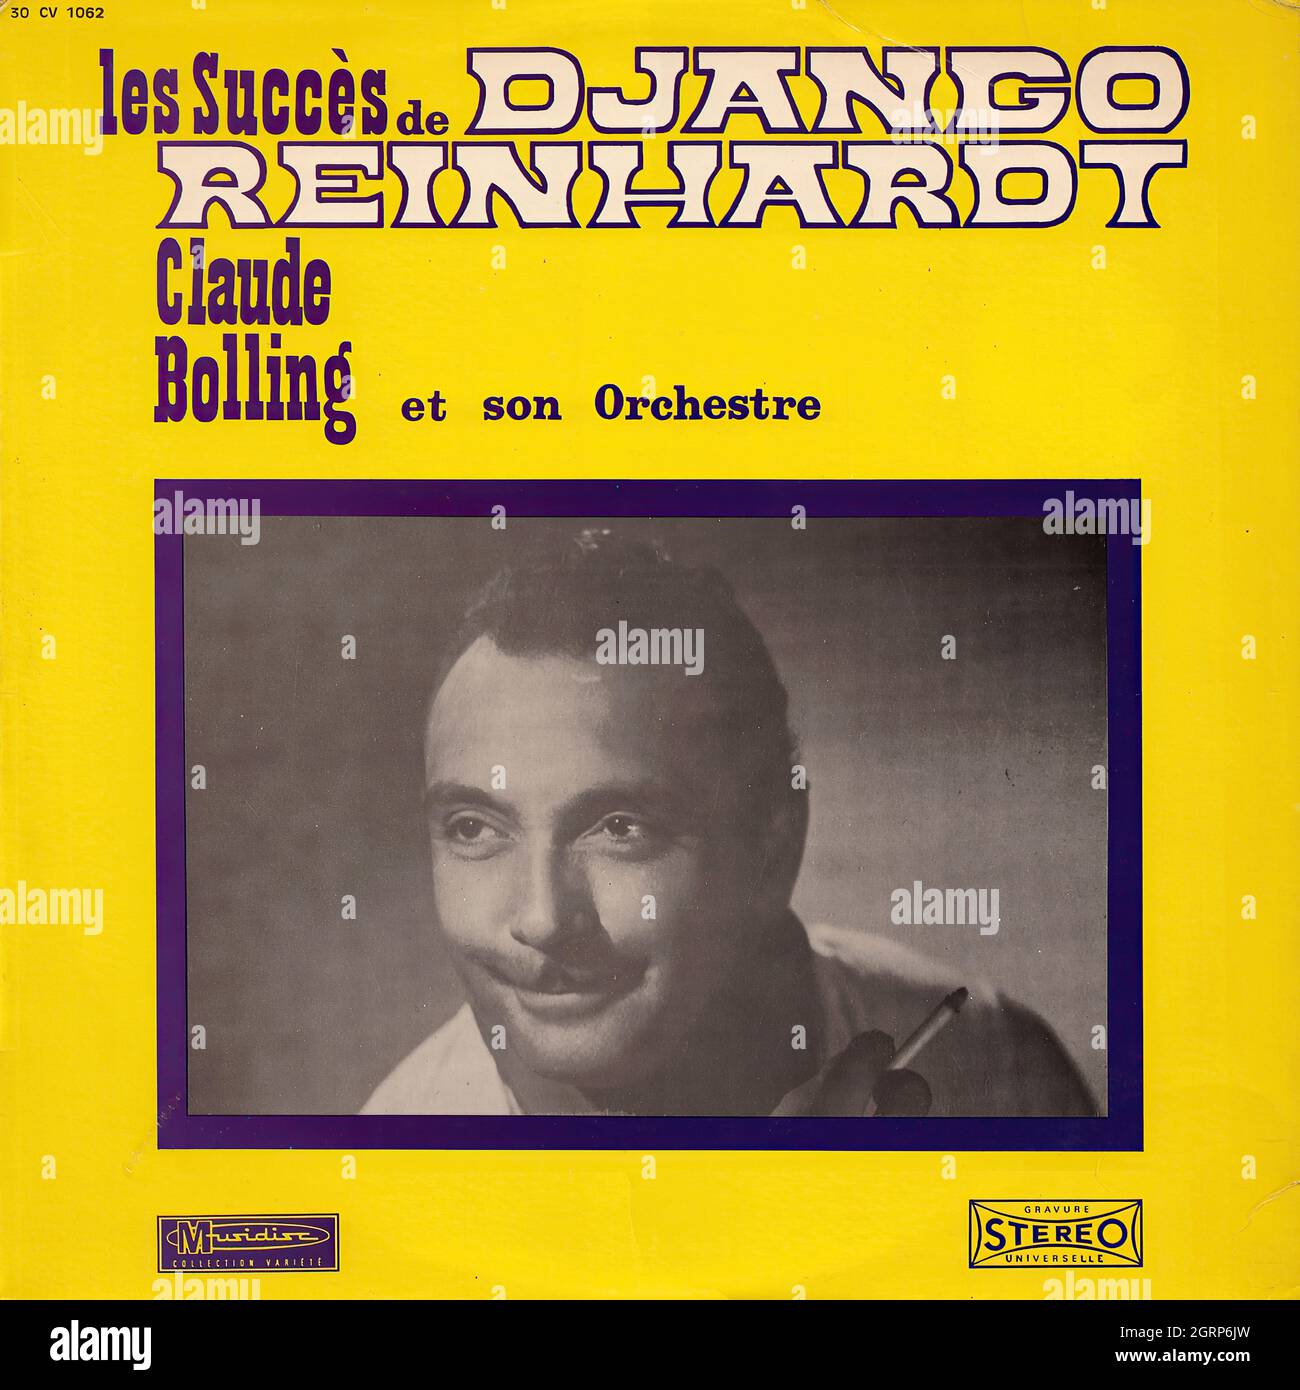 Claude Bolling et son Orchestre - les success de Django Reinhardt - Vintage Vinyl Record Cover Banque D'Images